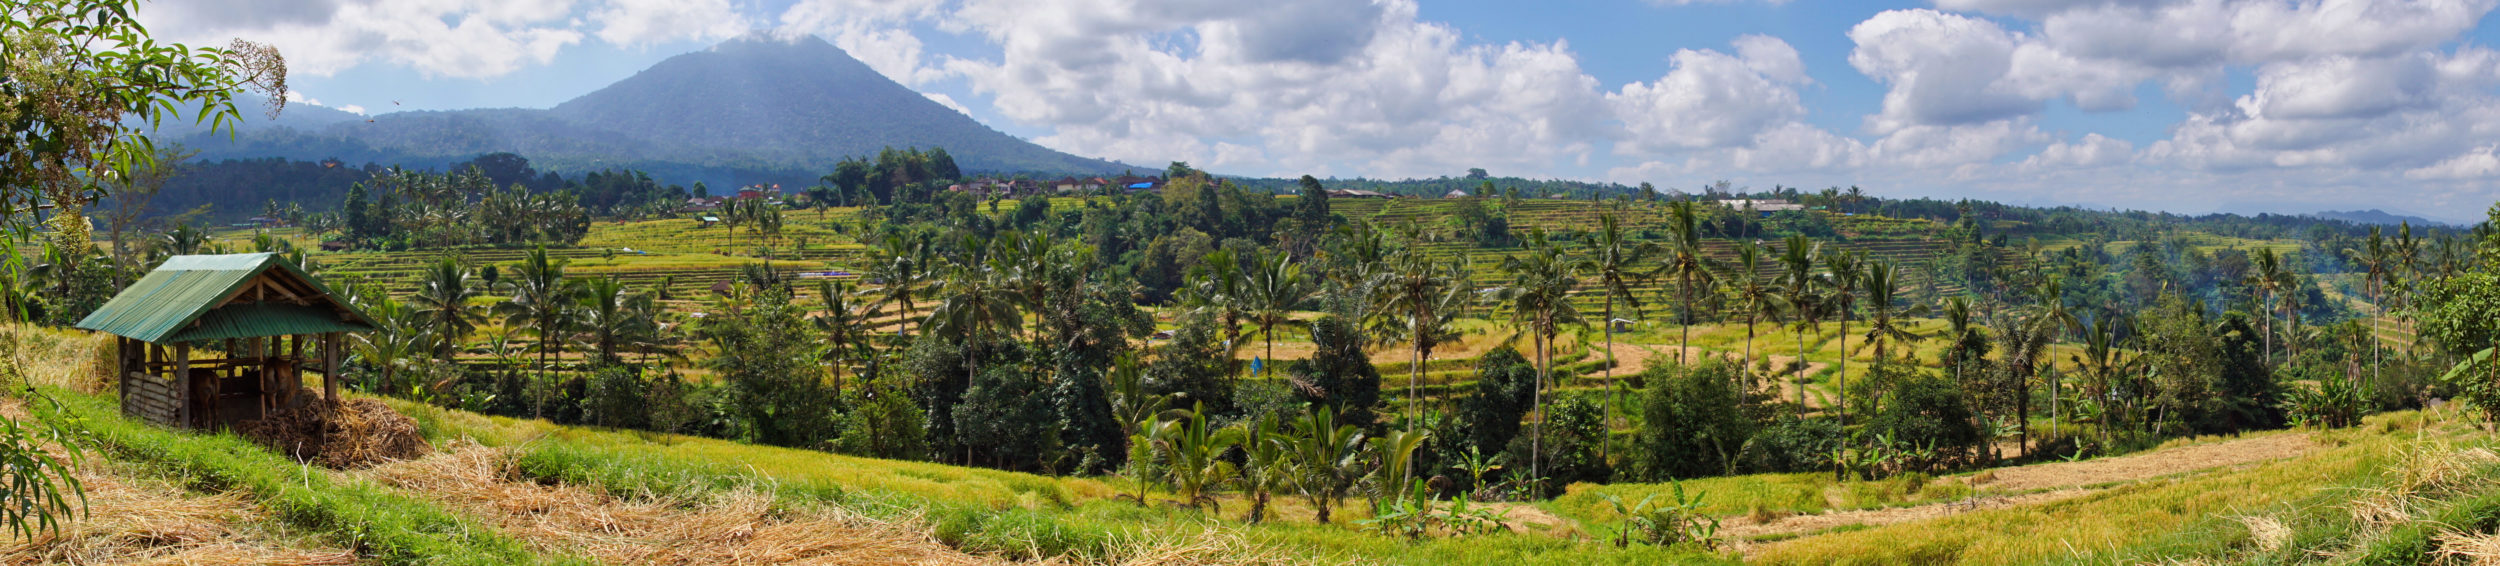 Voyage à Bali, les rizières de Jatiluwih